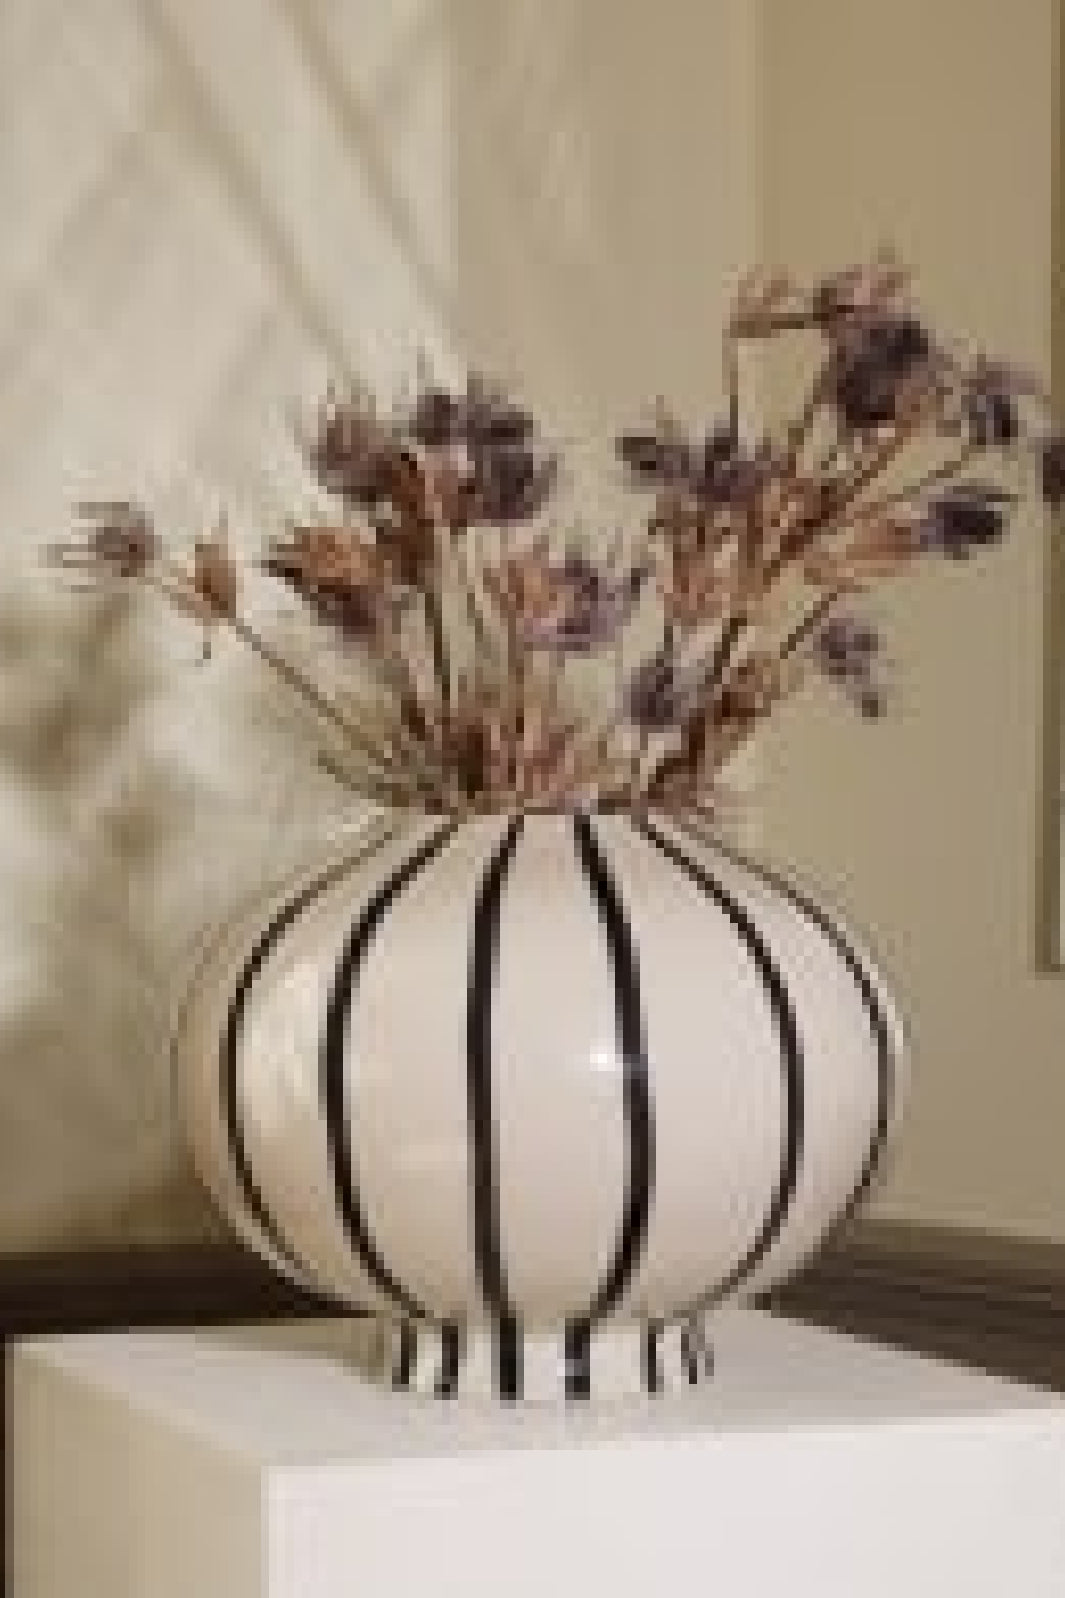 Eden Outcast - Cocoon Vase - Beige Vaser 